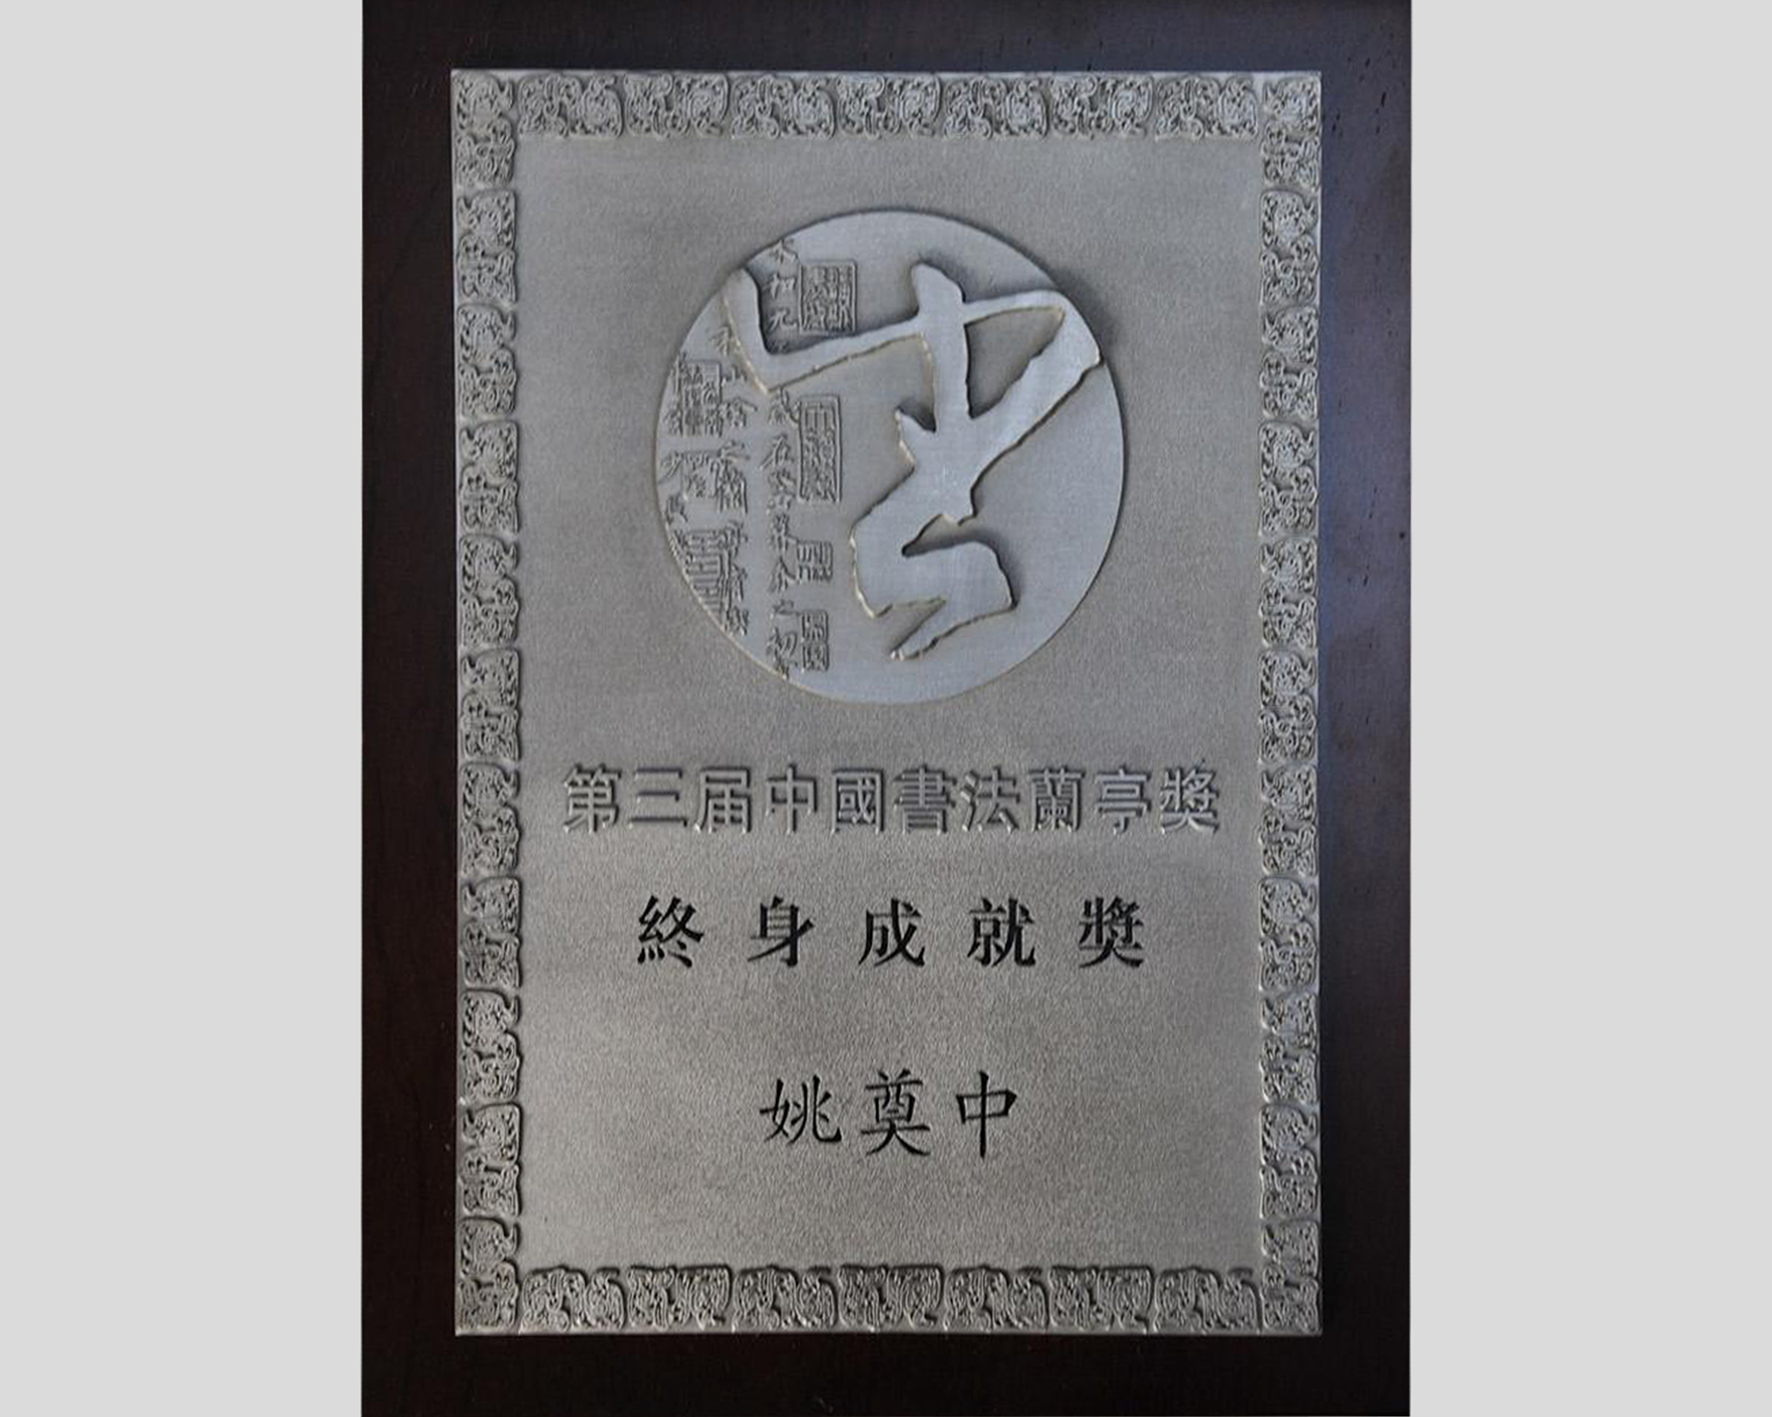 2009年12月27日获中国书法兰亭奖“终身成就奖”